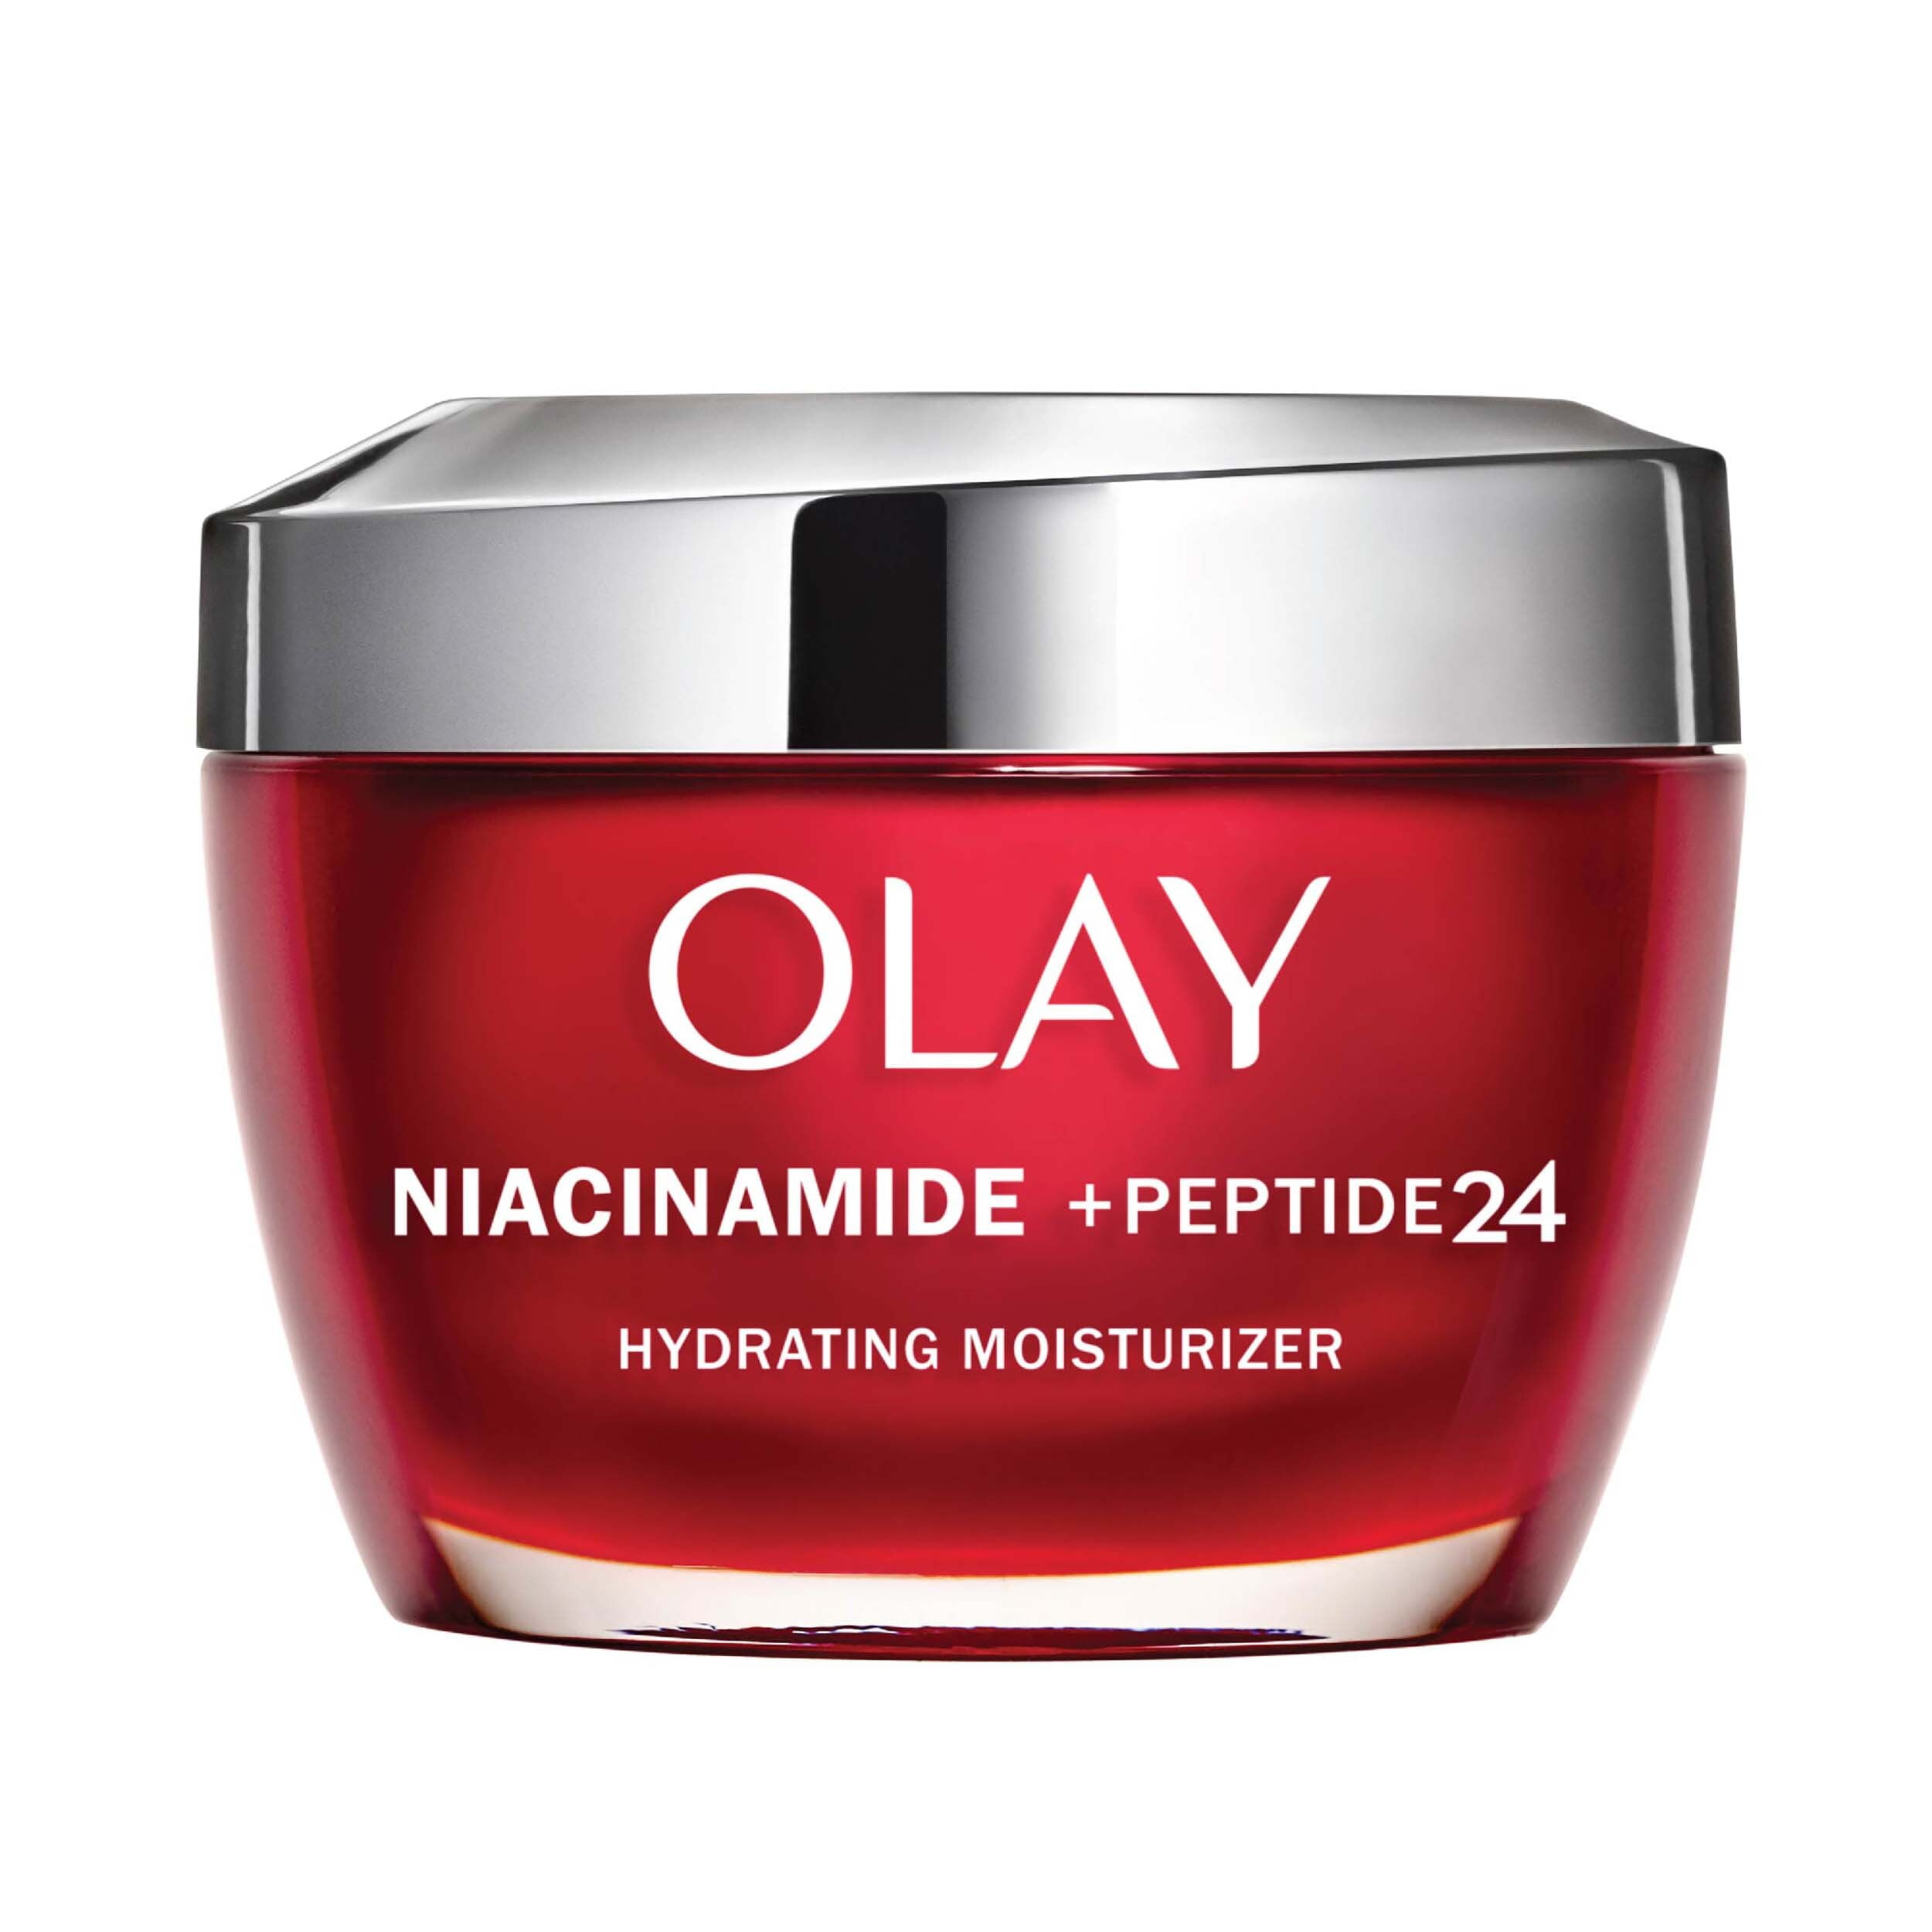 Olay Regenerist Niacinamide + Peptide 24 Face Moisturizer Cream, 1.7 oz